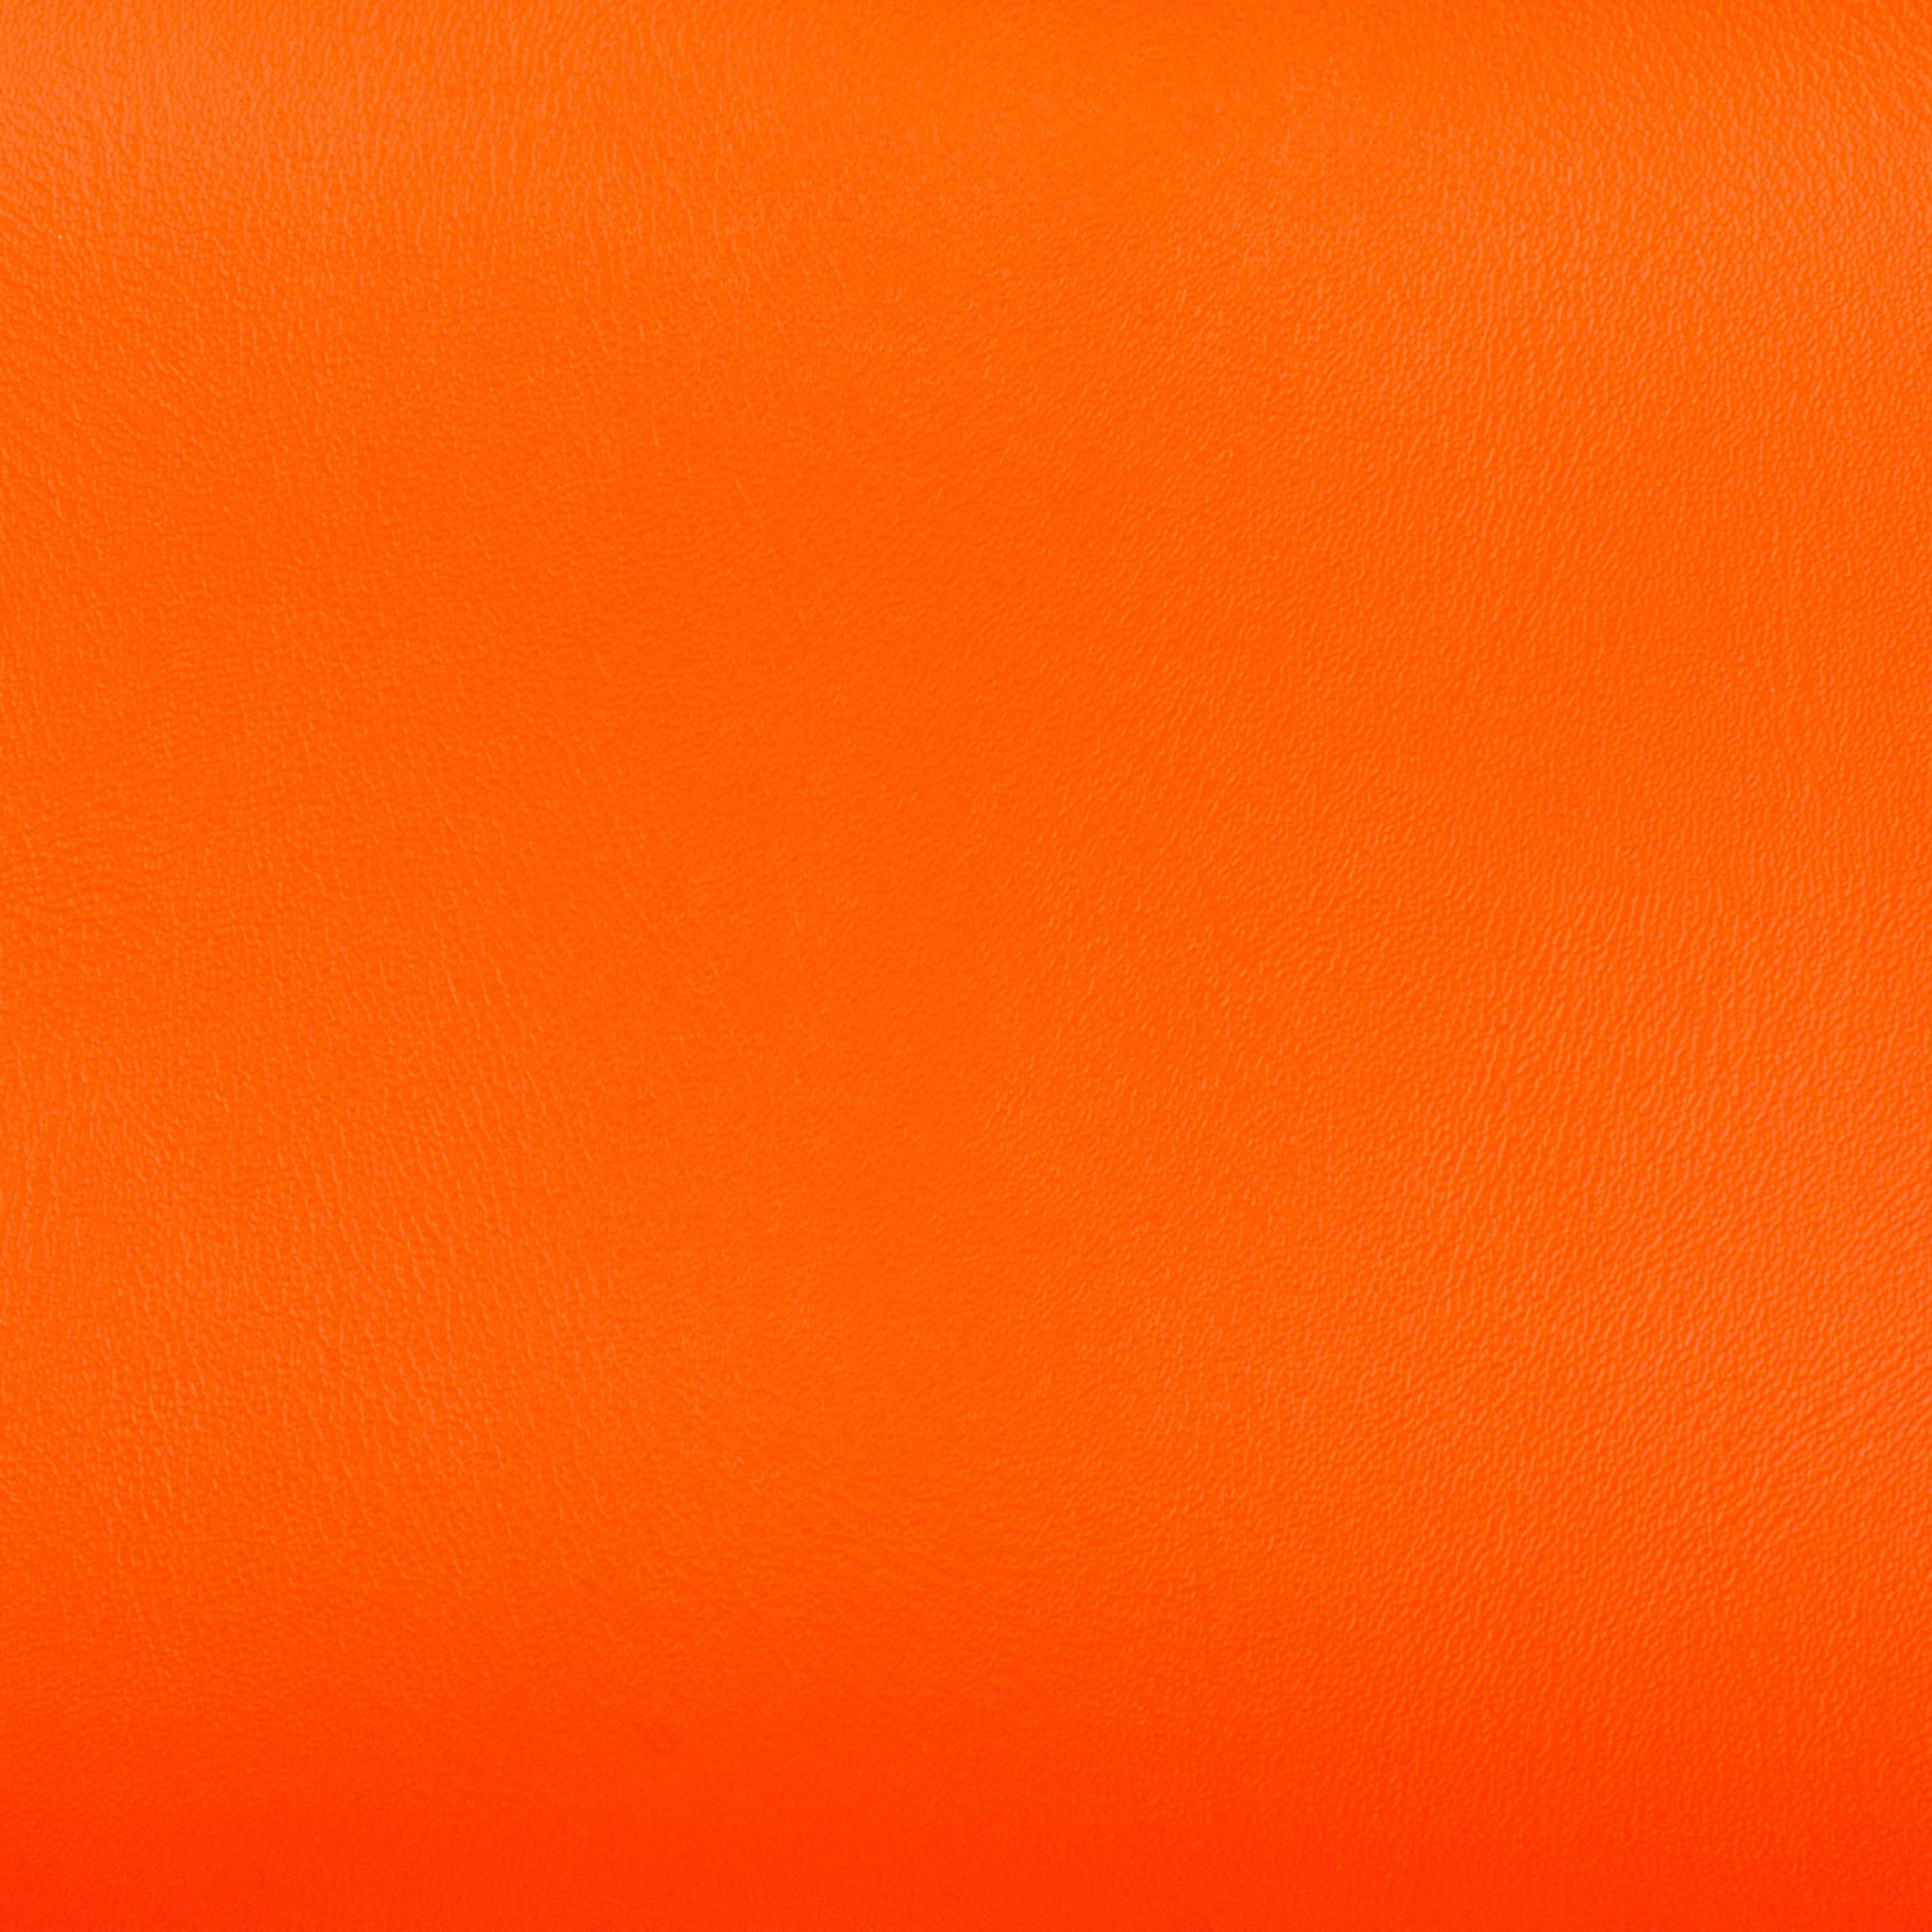 Erlebnismatte 'Meditap', 270 x 350 x 3 cm, orange